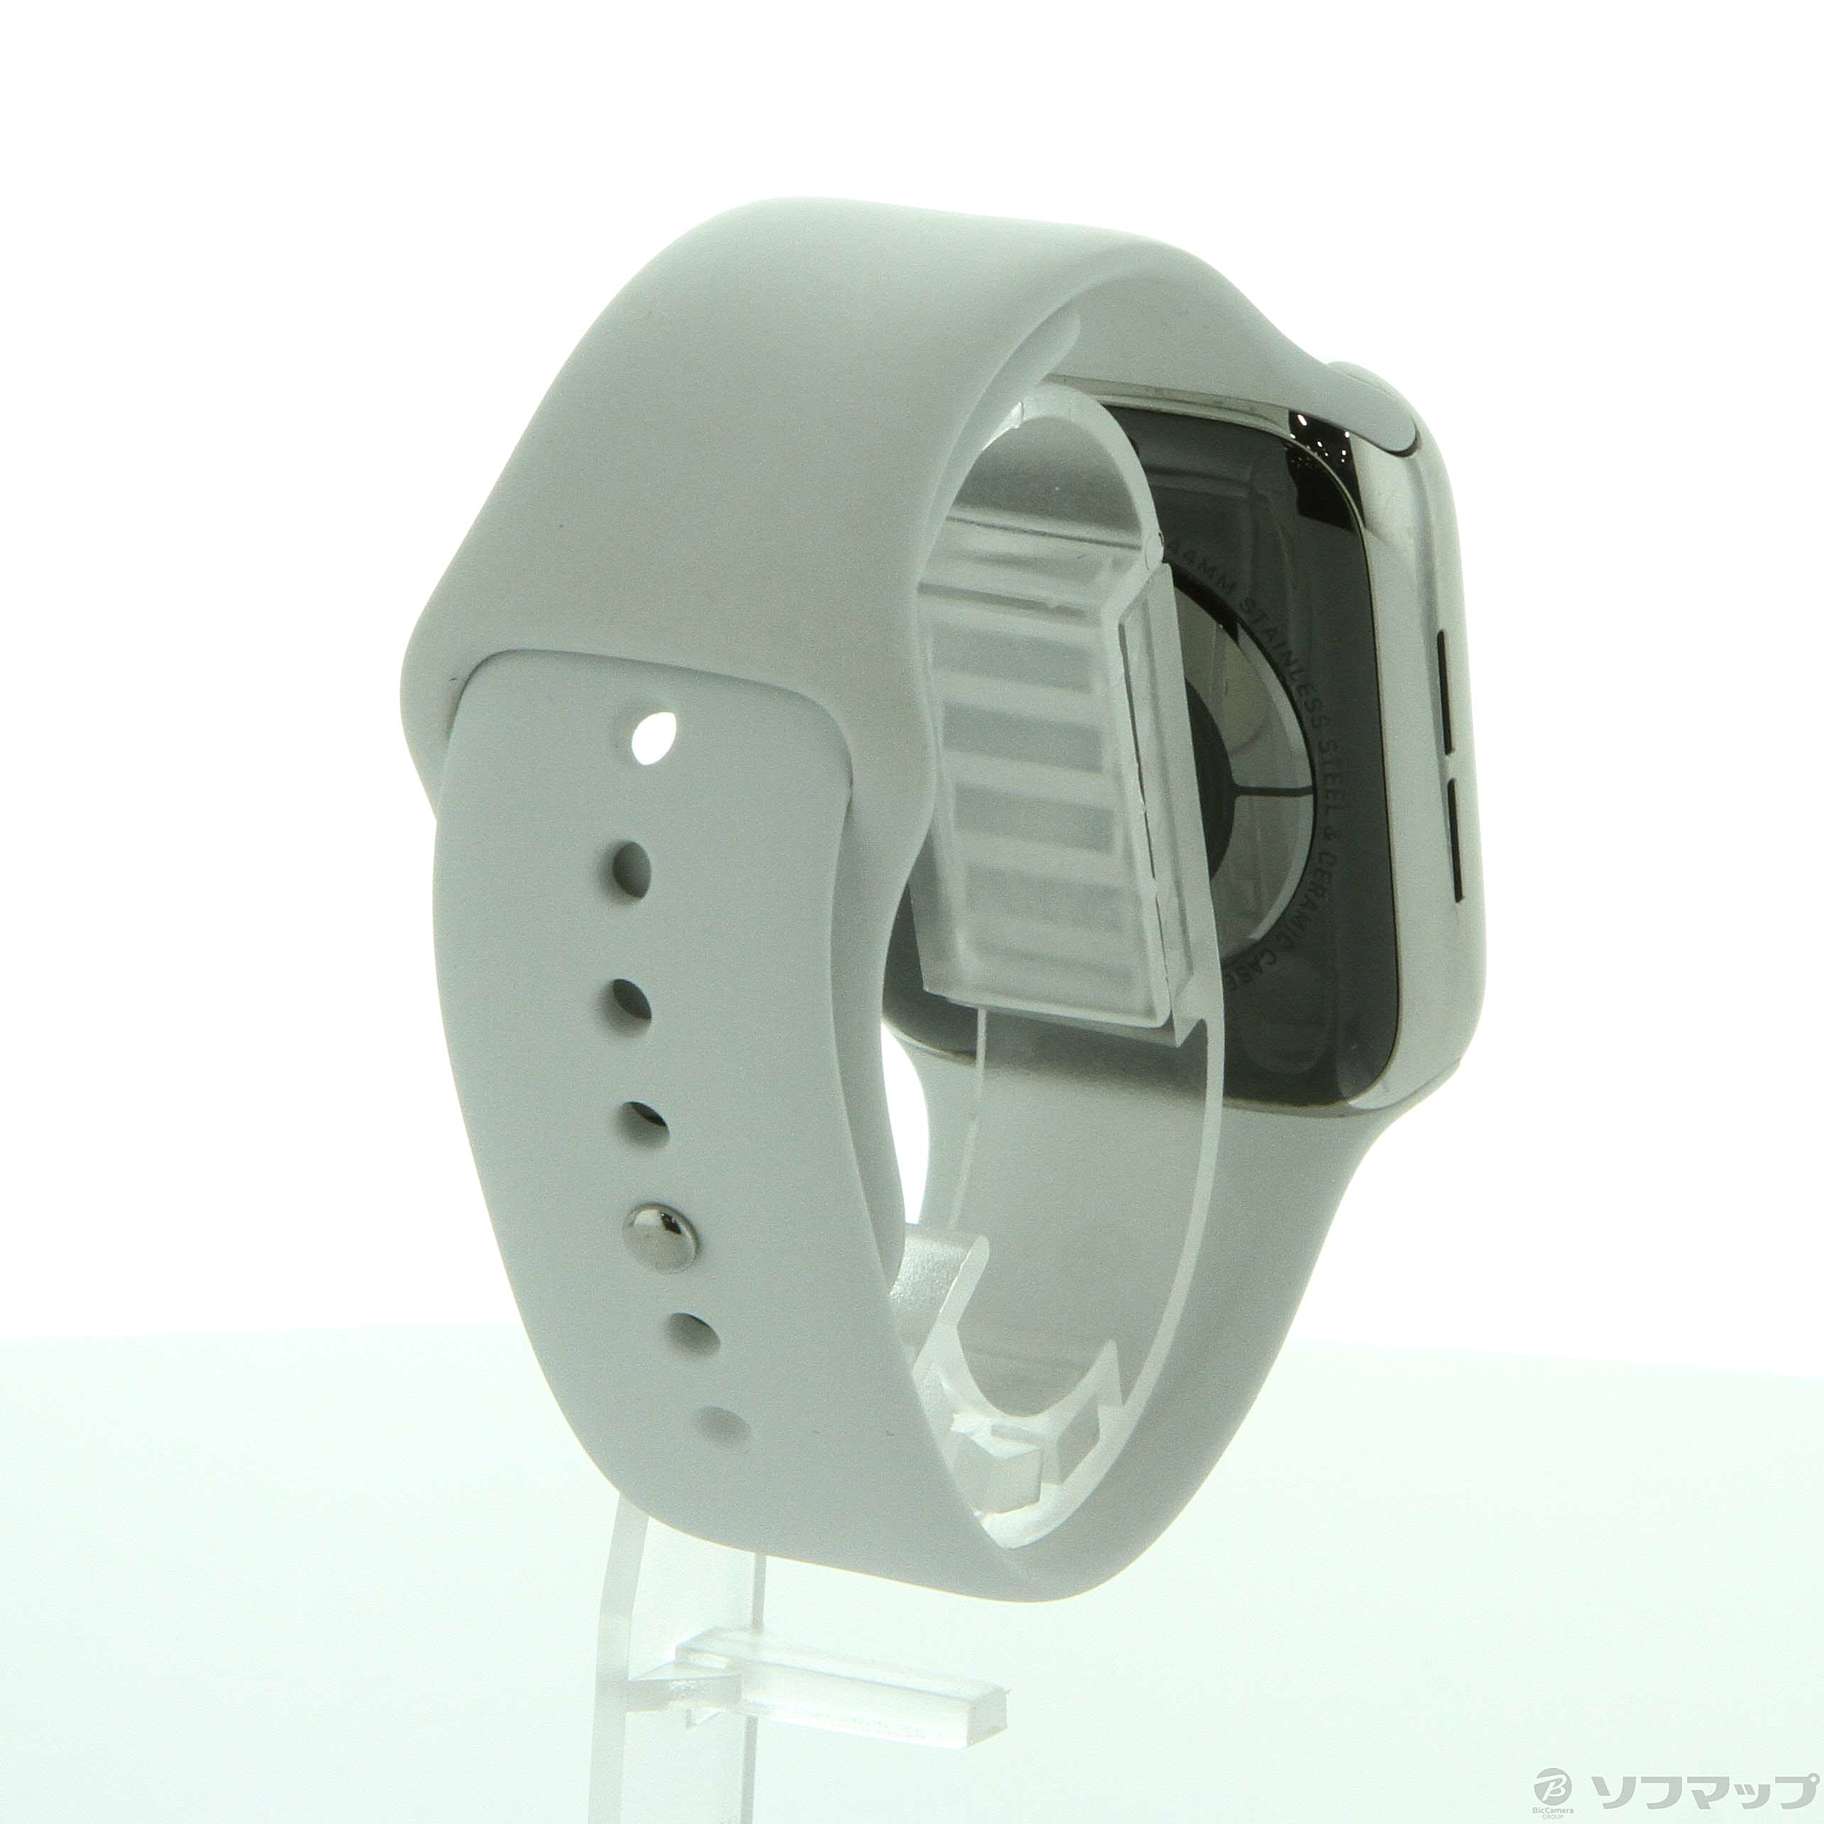 〔中古品〕 Apple Watch Series 5 GPS + Cellular 44mm ステンレススチールケース ホワイトスポーツバンド